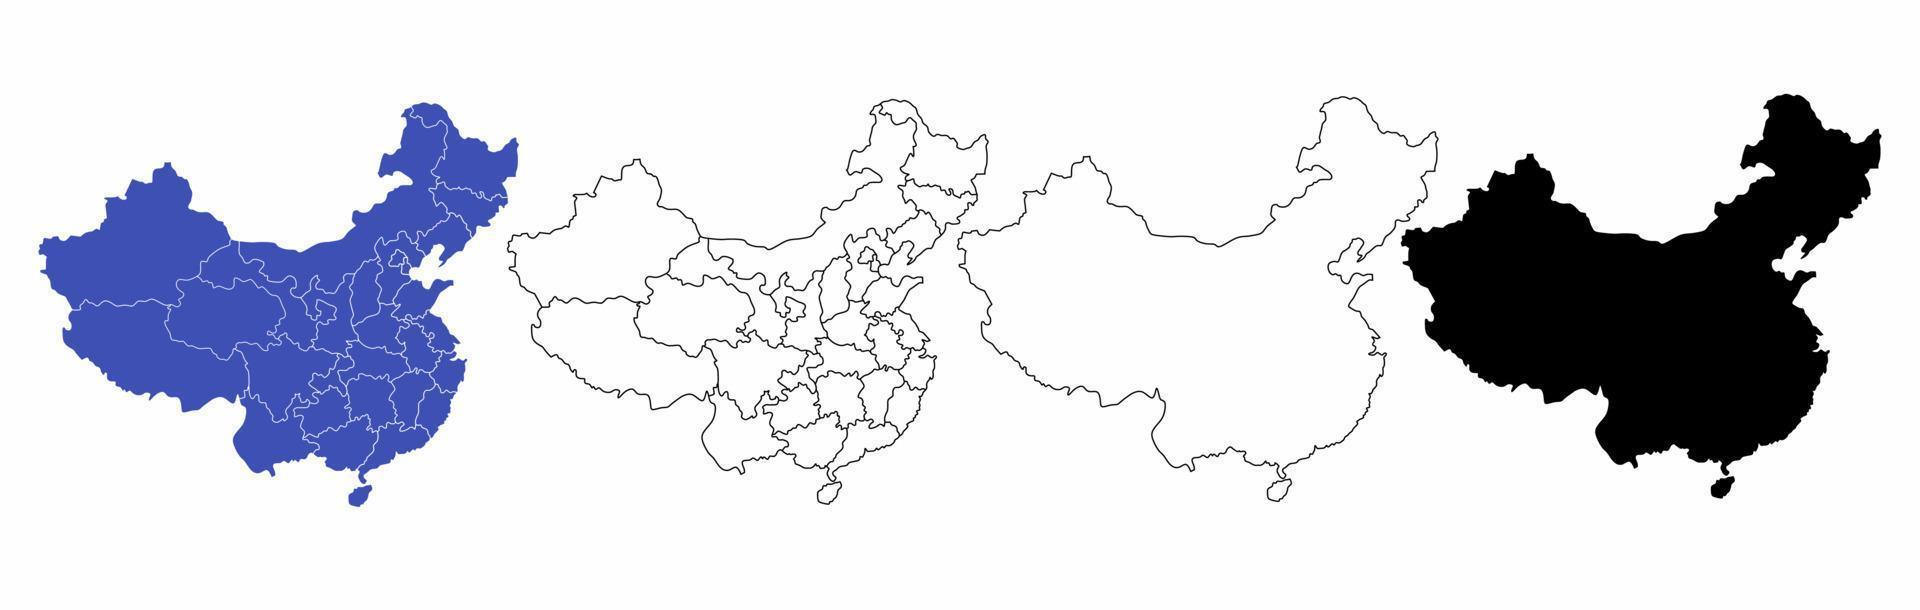 kaart van de Volksrepubliek China set geïsoleerd op een witte achtergrond vector